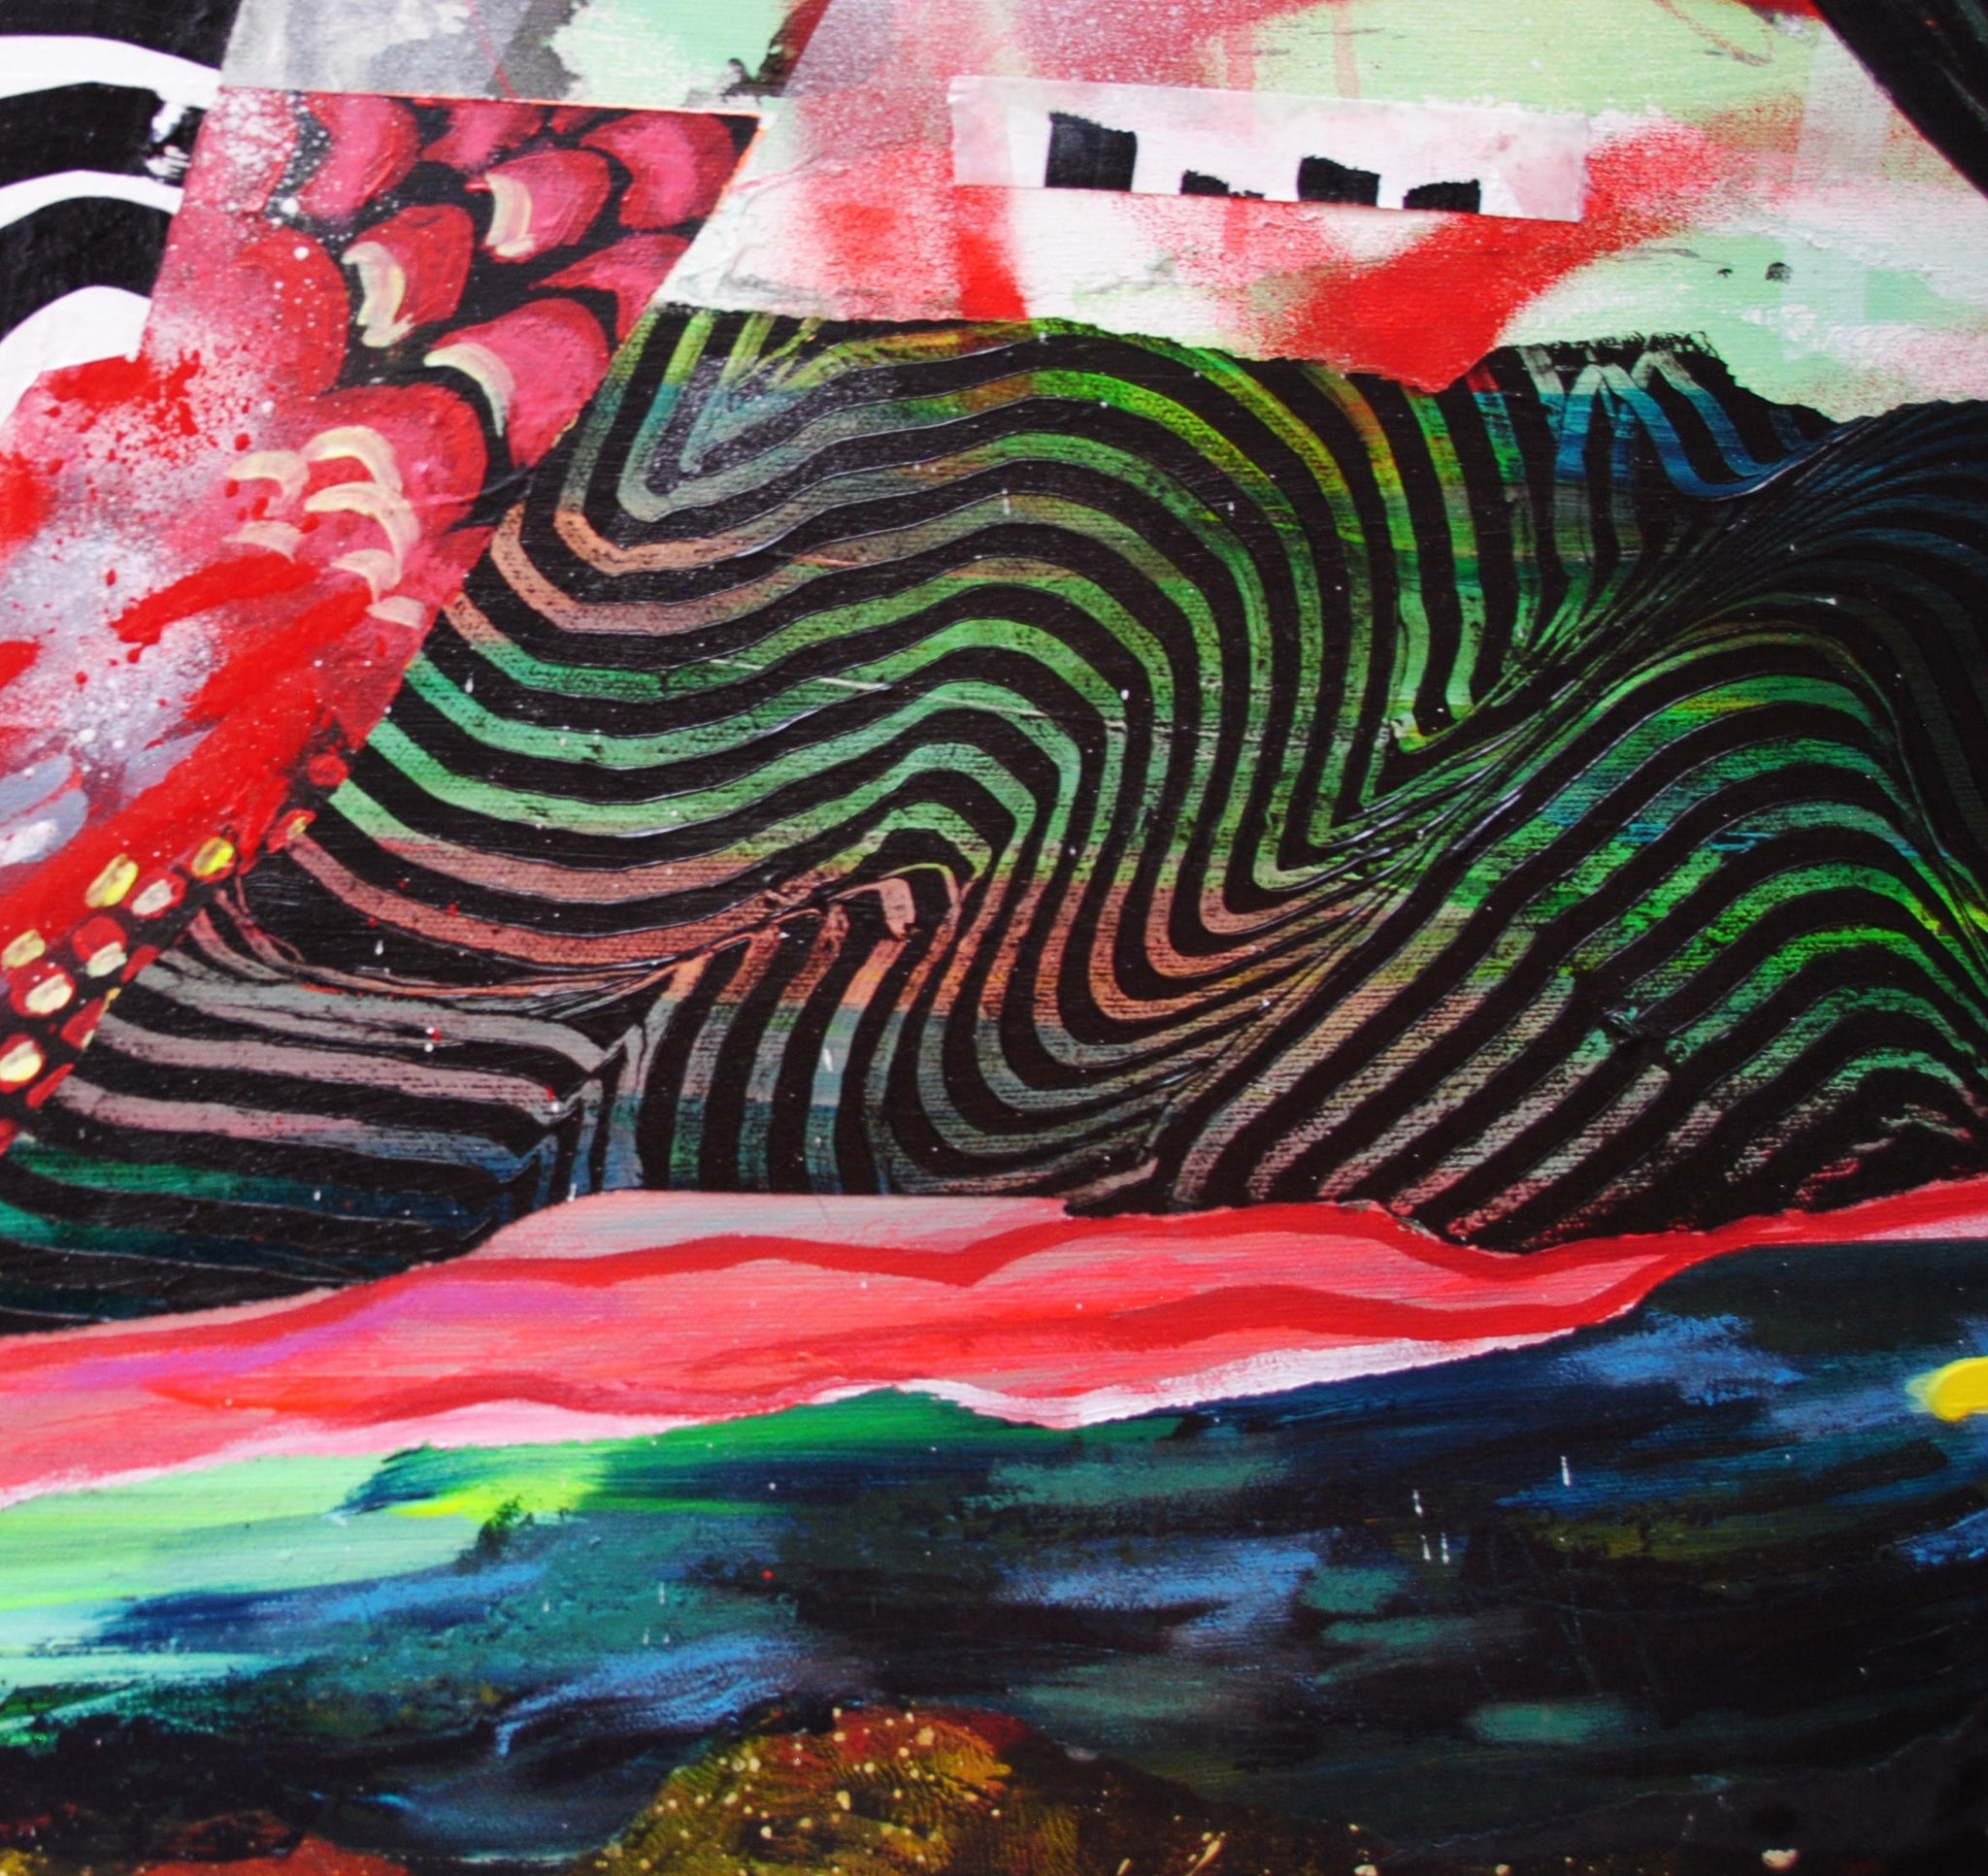 Détail d'une peinture acrylique présentant des lignes sinueuses noires et multicolores.